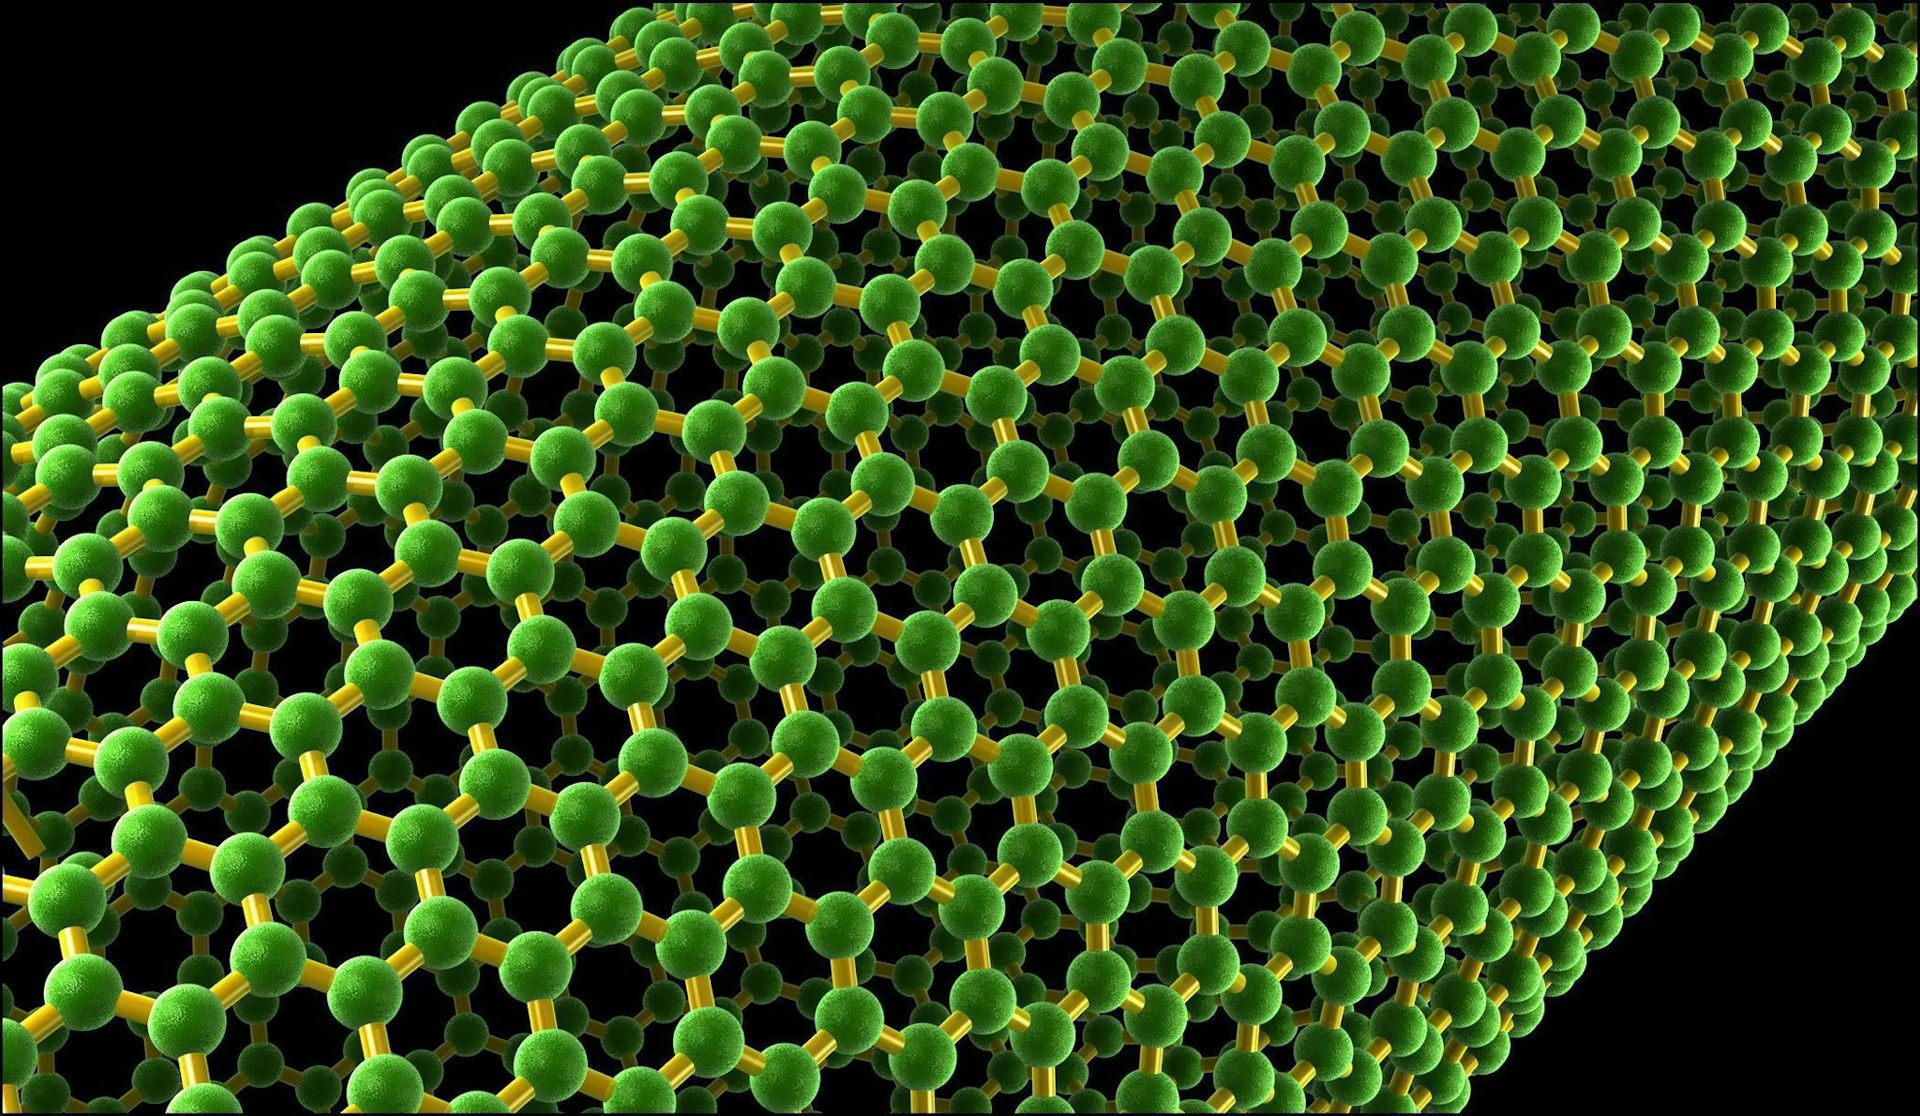 carbon nanotubes